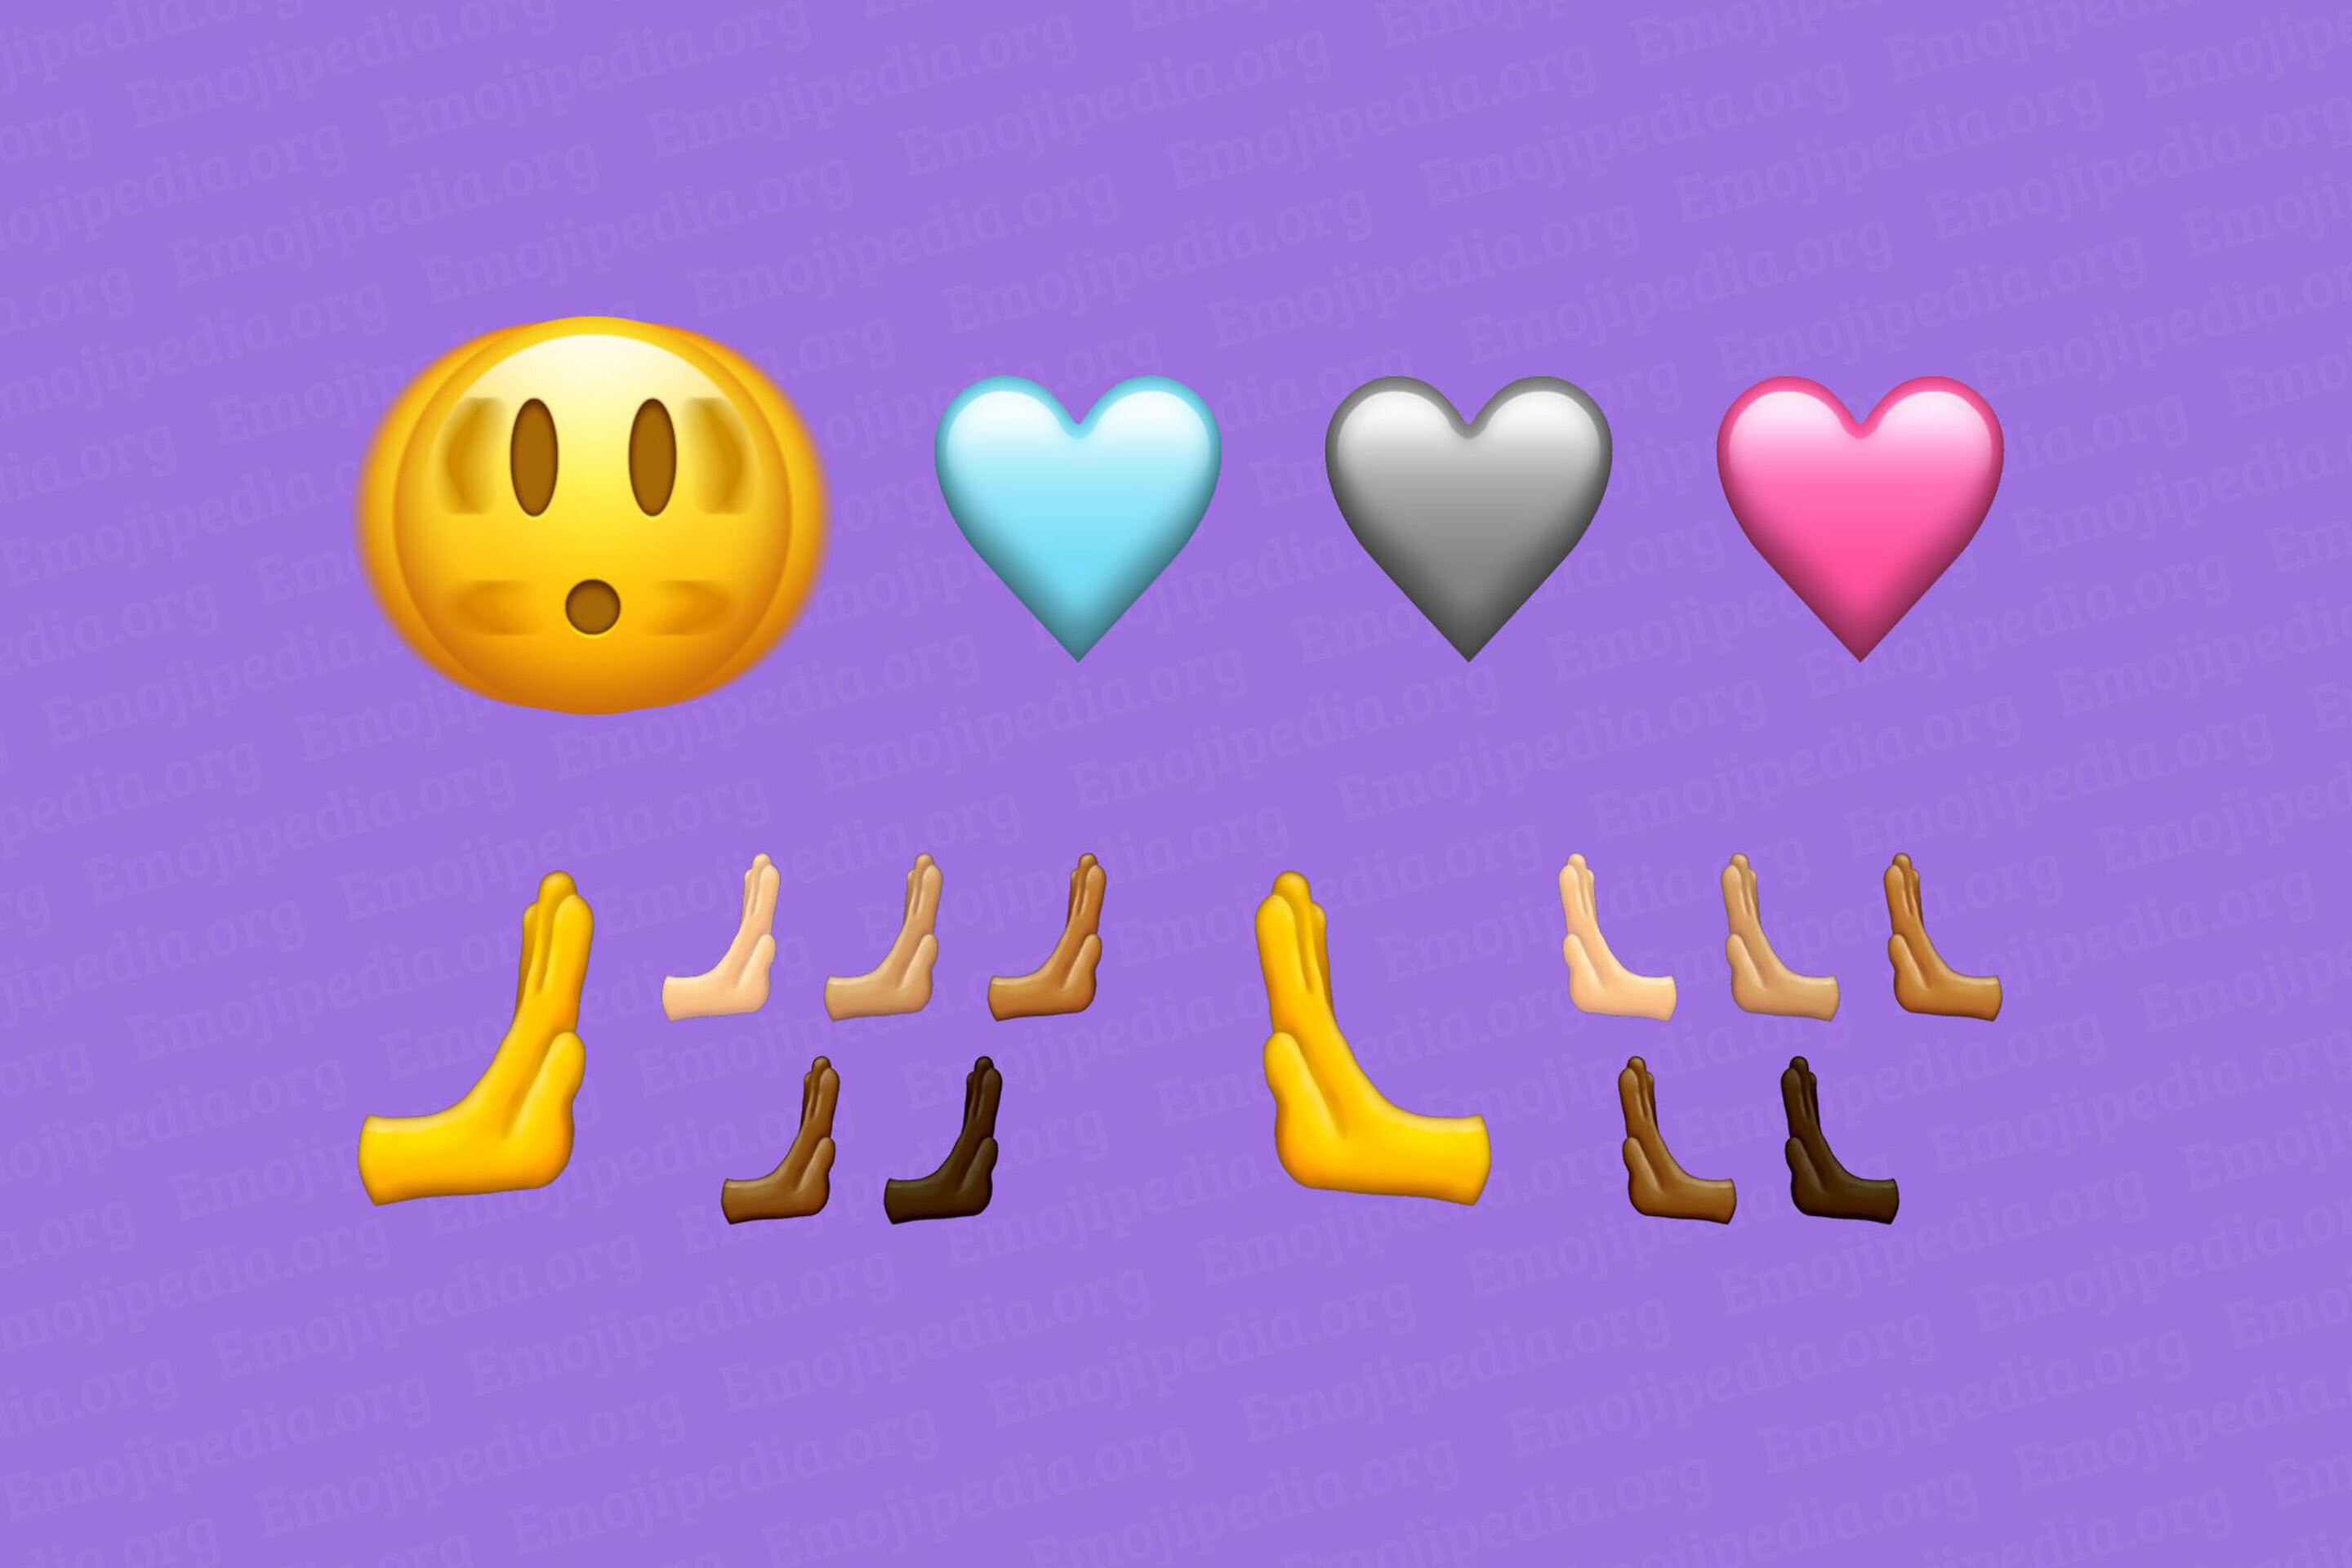 Đây là những biểu tượng emoji mới sắp có trên smartphone